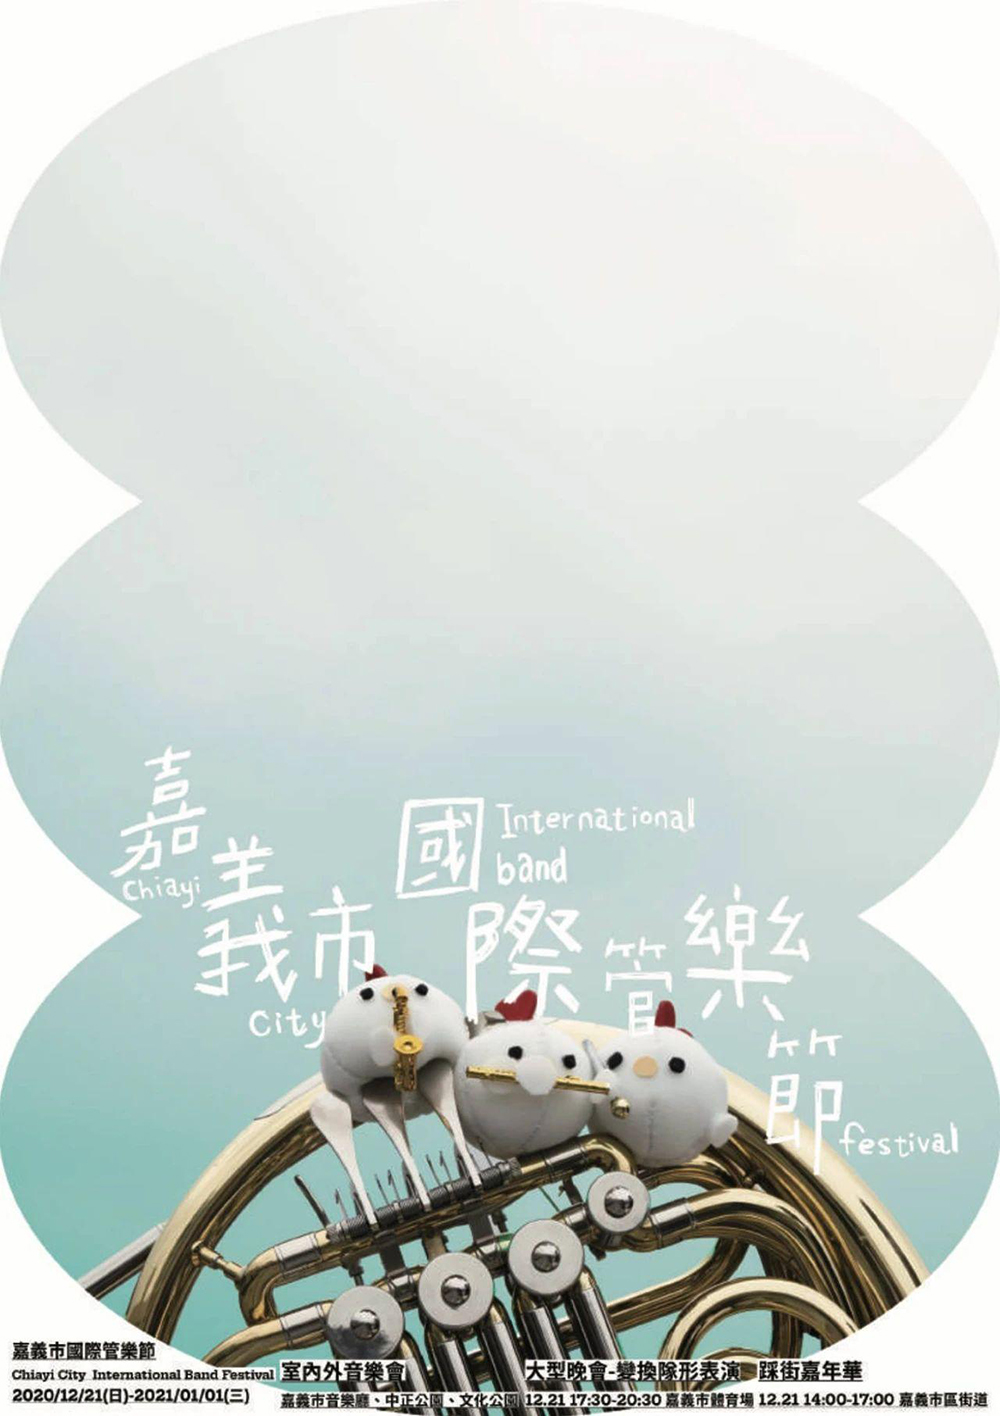 设计师涂闵翔的学生海报作品